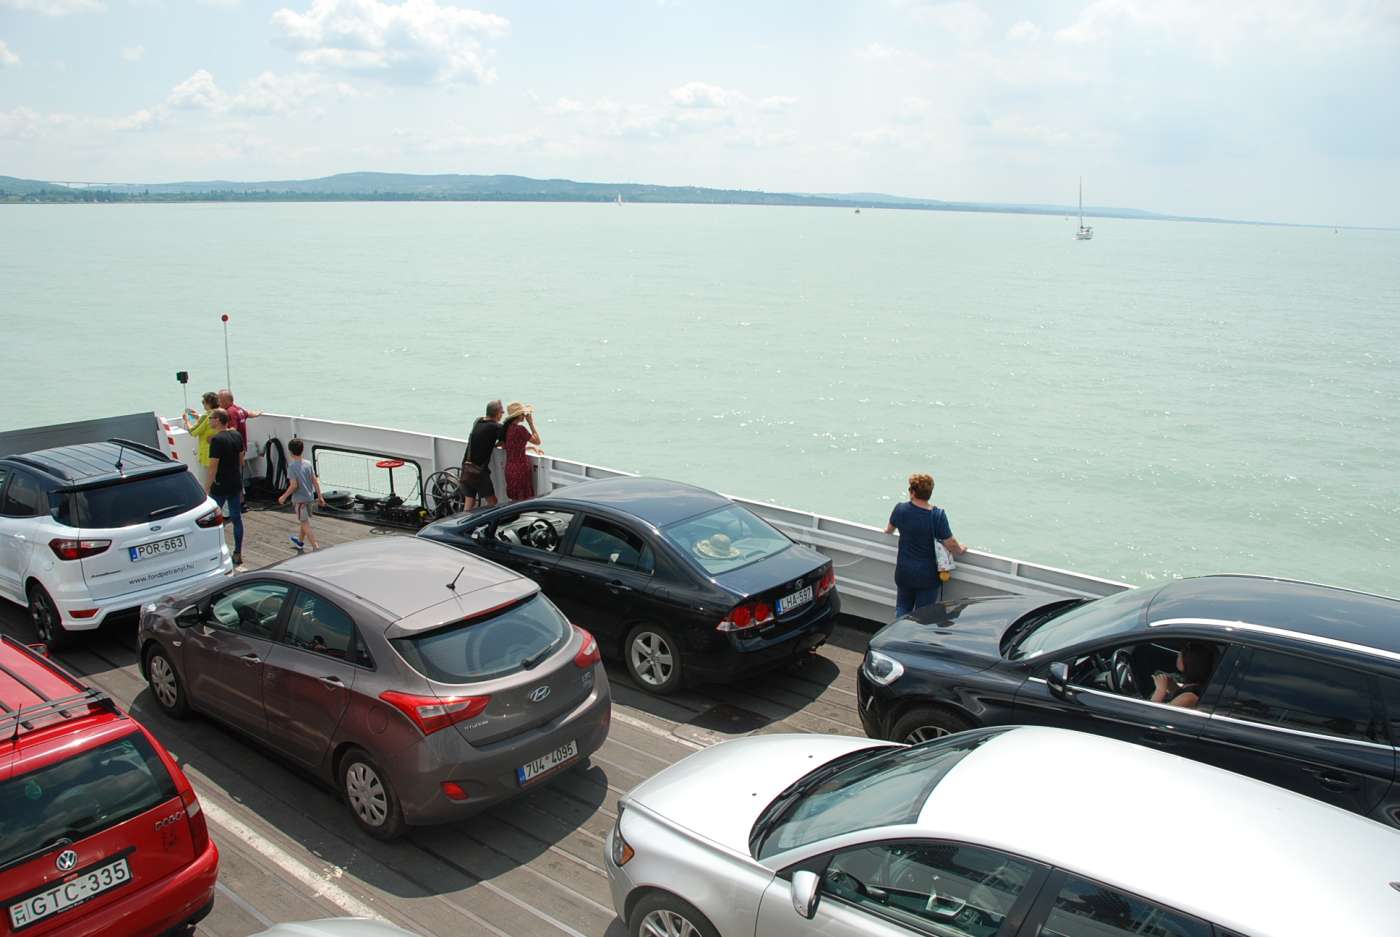 Balaton Ferry